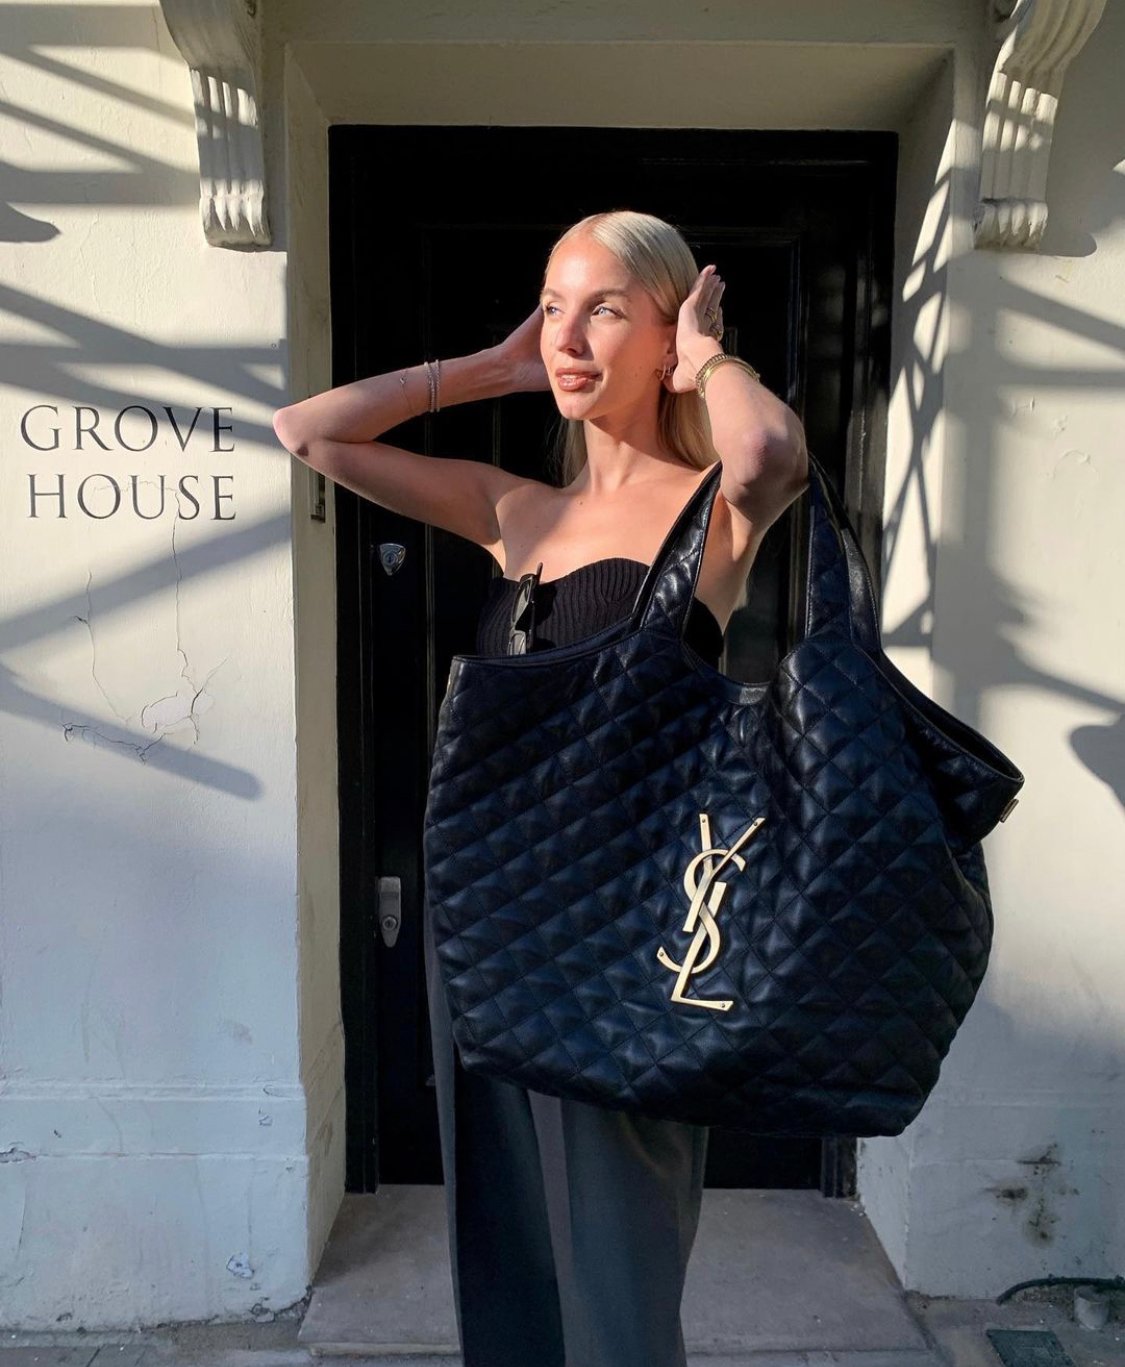 YSL ICARE MAXI SHOPPING BAG Reveal and Handbag Review! Designer